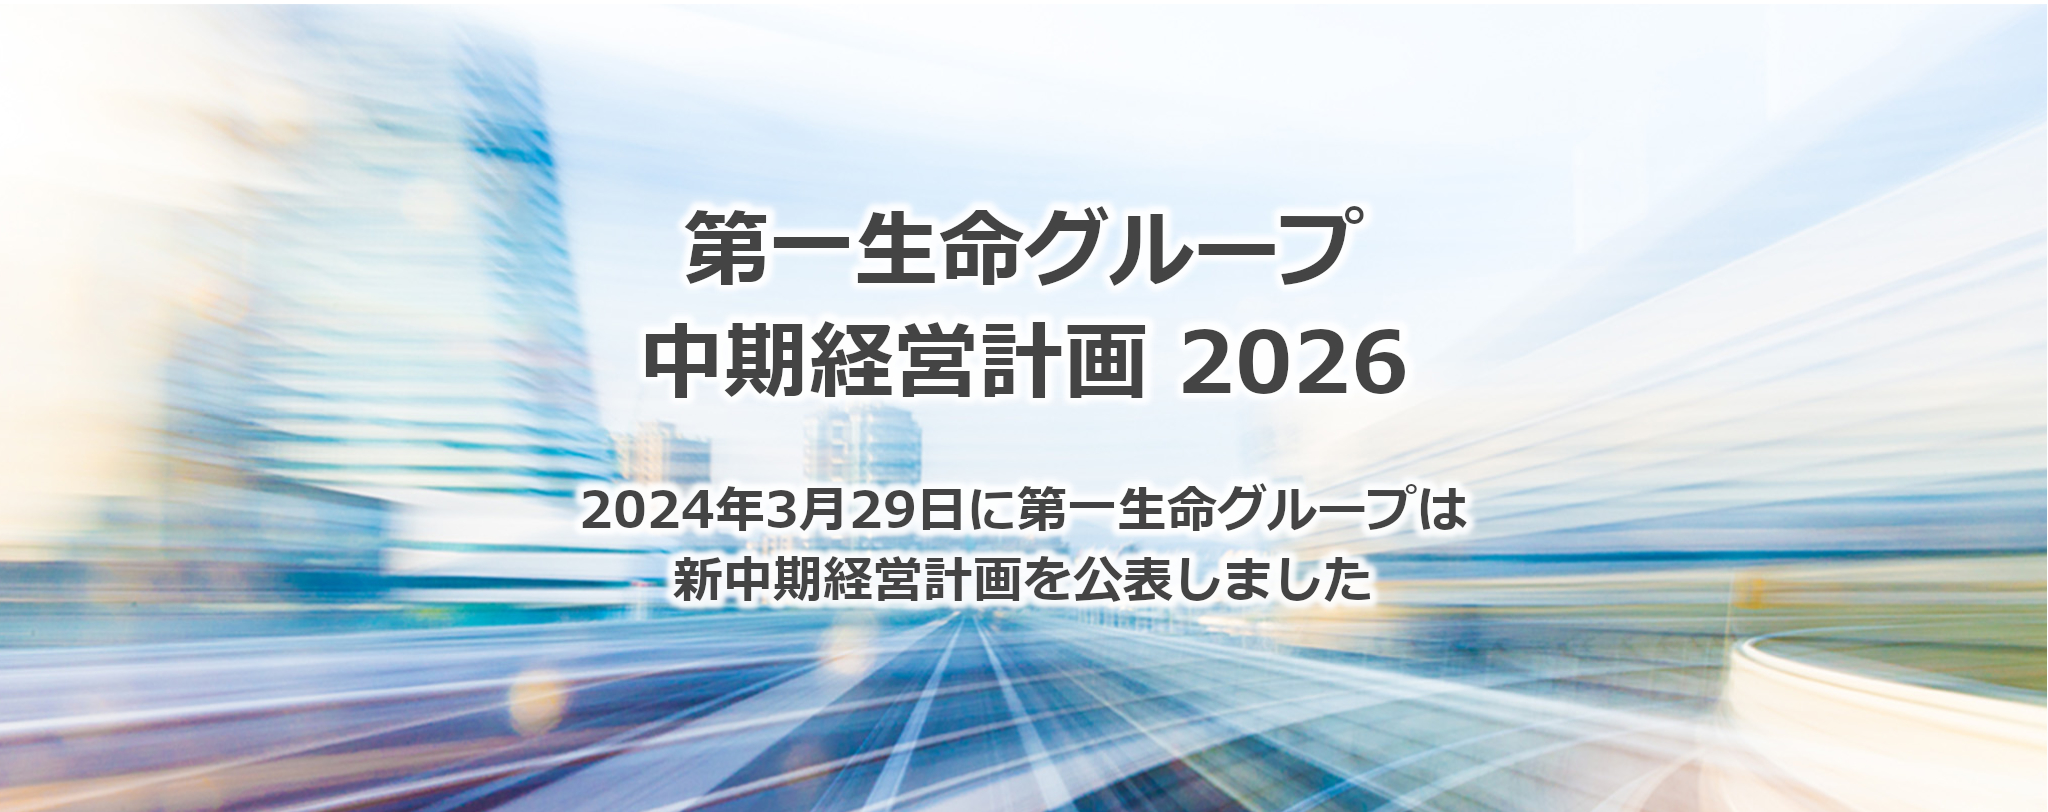 グループ経営戦略「Re-connect 2023」